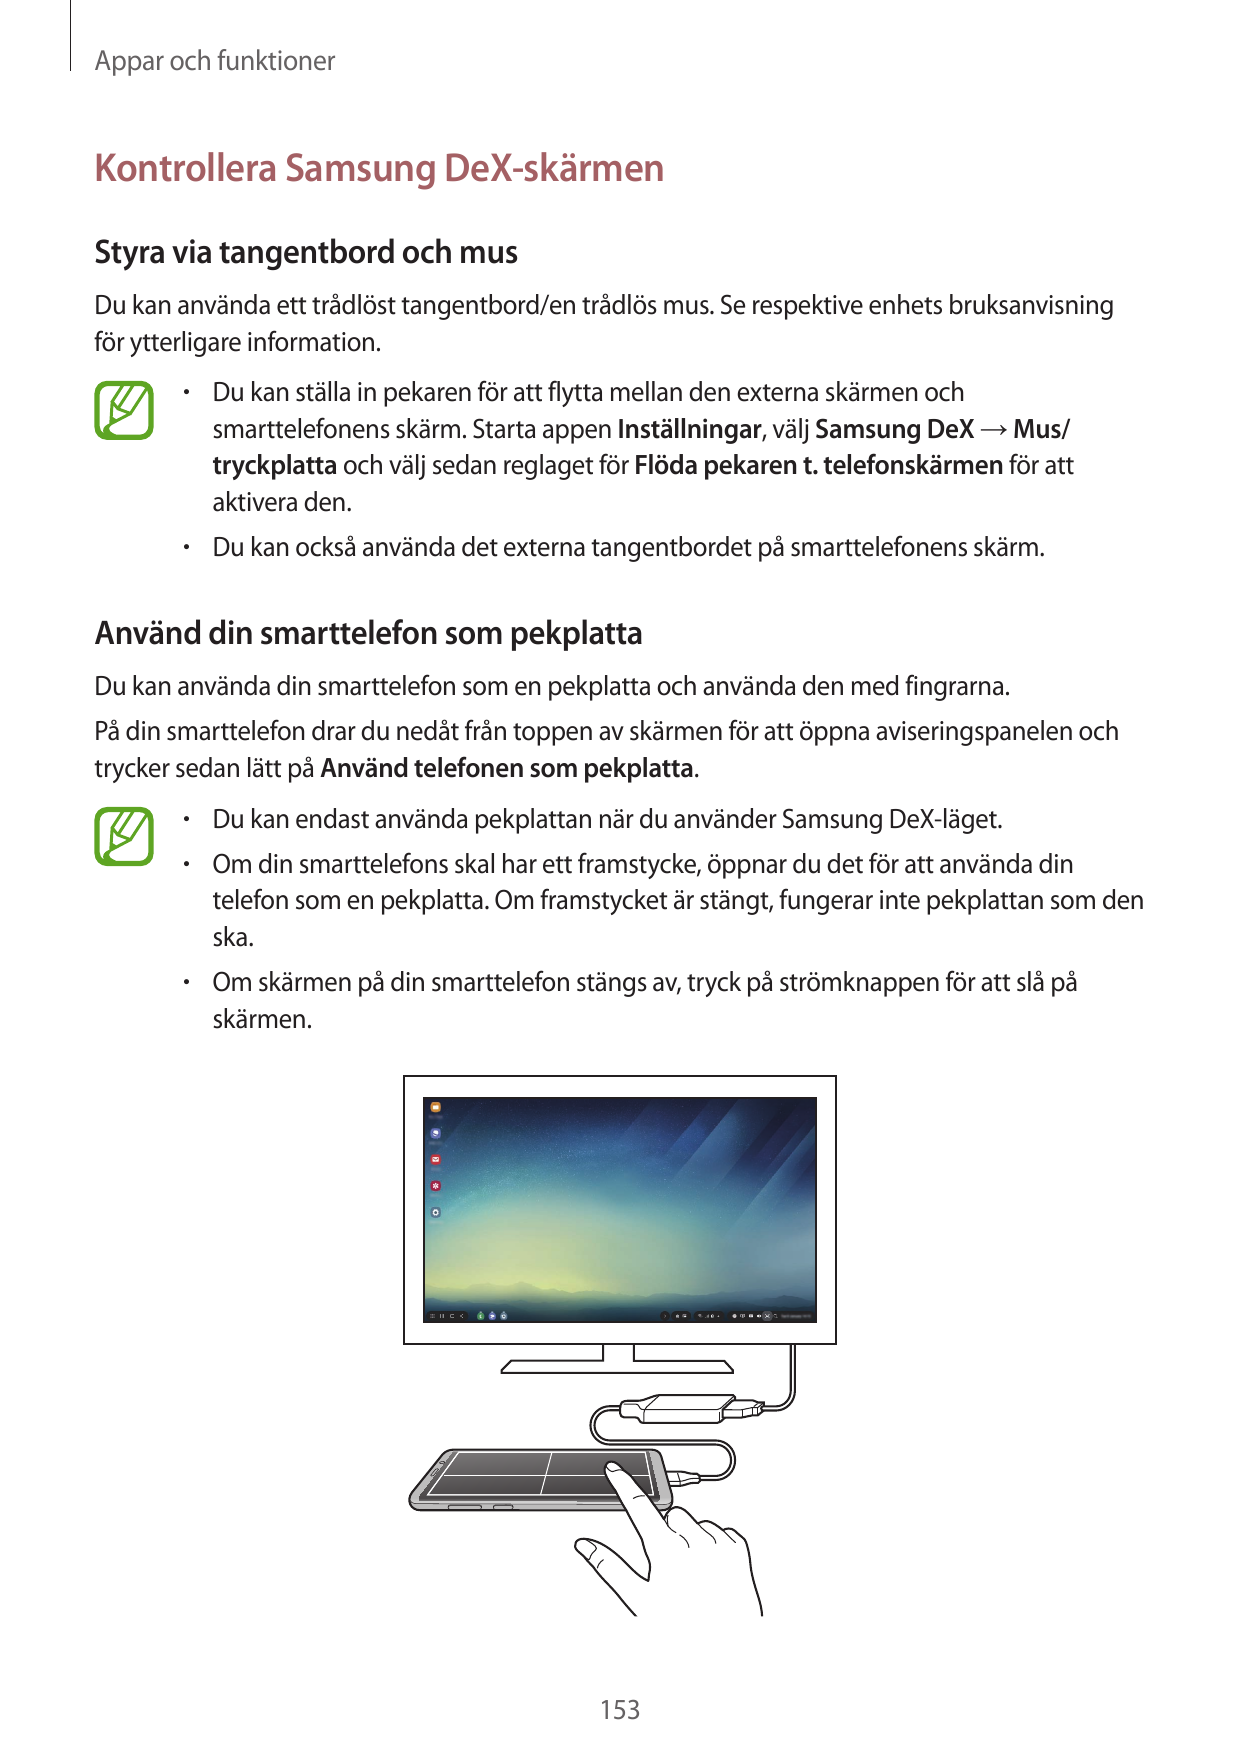 Appar och funktionerKontrollera Samsung DeX-skärmenStyra via tangentbord och musDu kan använda ett trådlöst tangentbord/en trådl